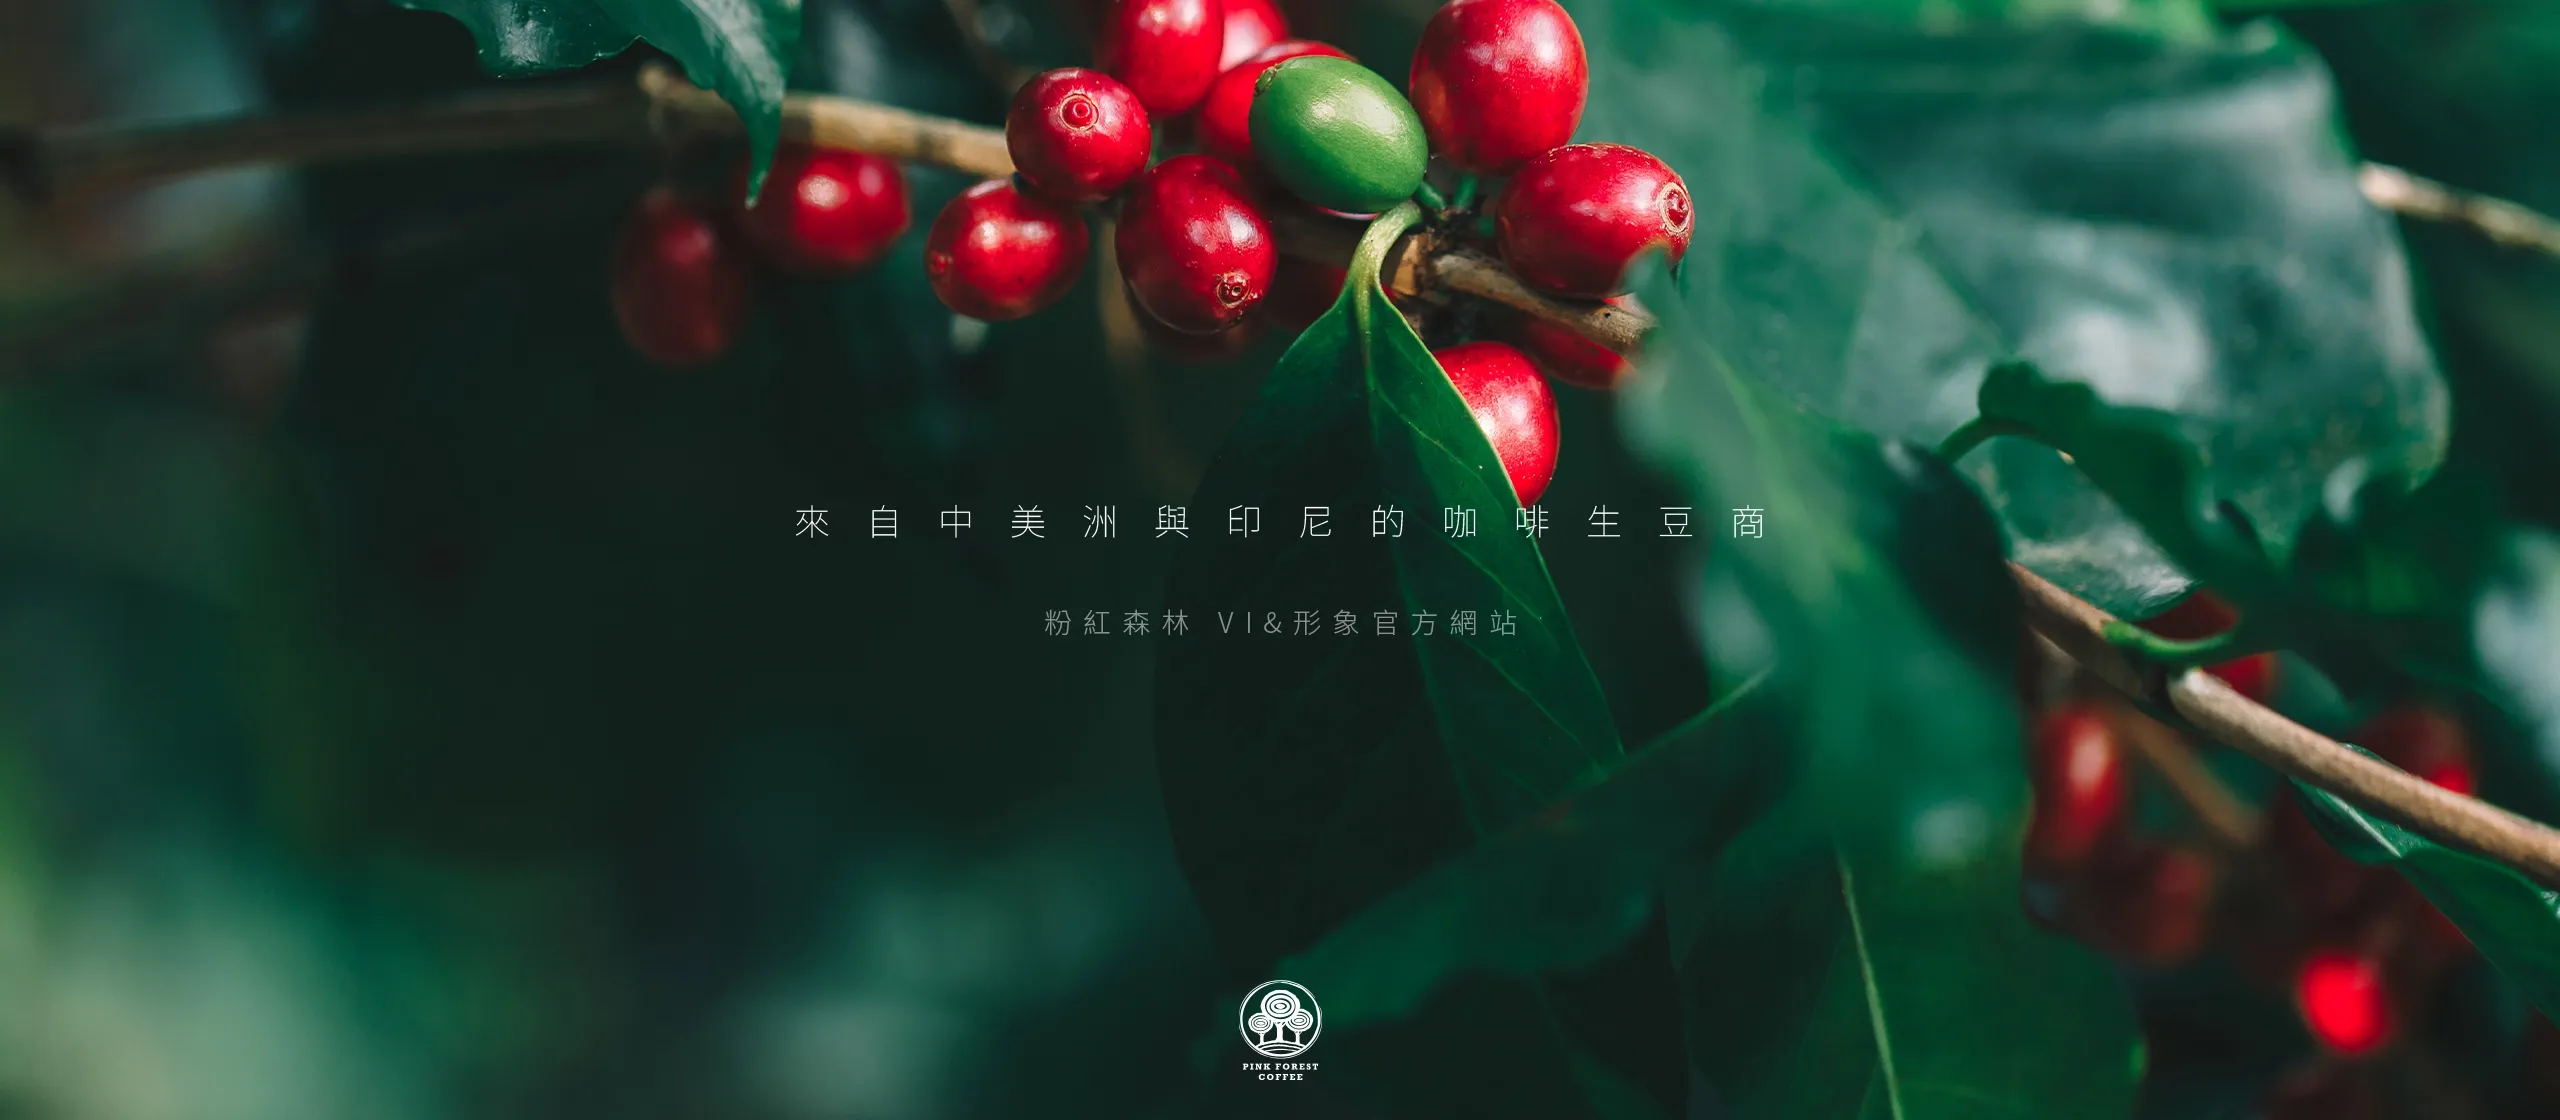 台北 粉紅森林咖啡生豆商 RWD形象官網/網站設計/平面設計/dm設計/型錄設計/展場設計